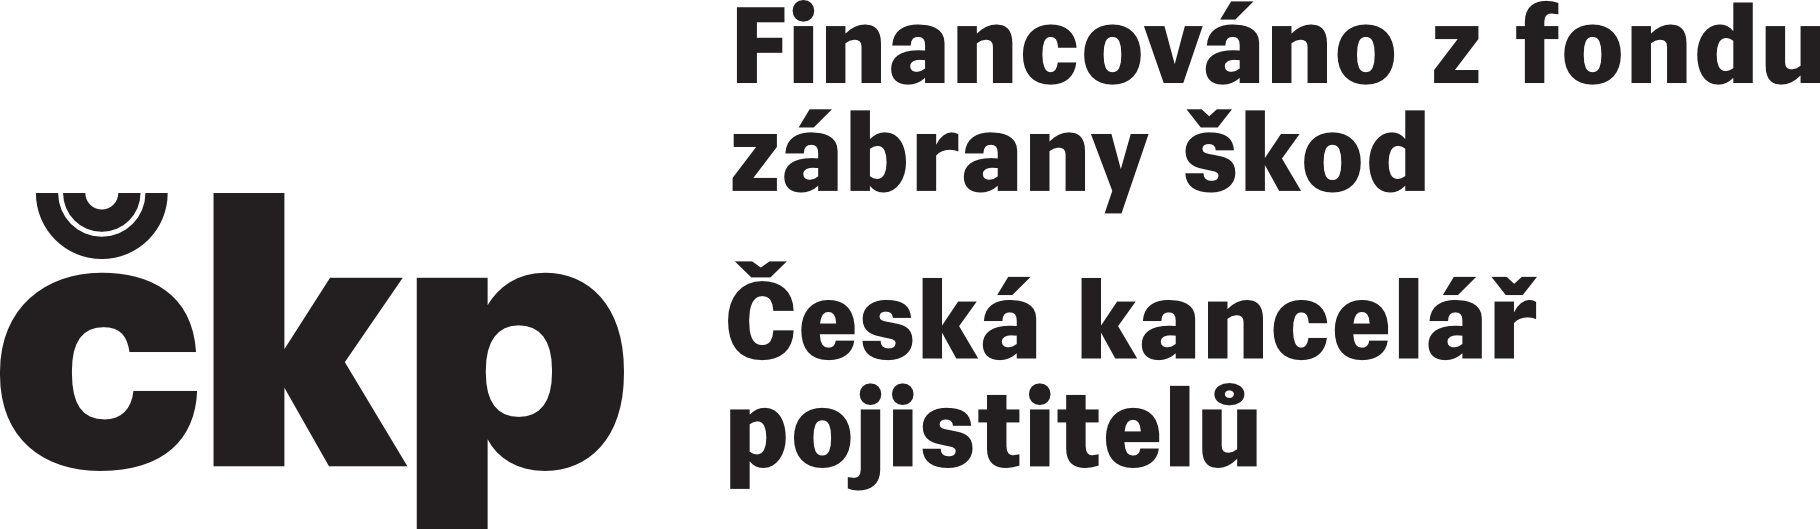 CKP_Financovani_Z_Fondu_Zabrany_Skod_cernobile_4_radky_bez_pozadi.png